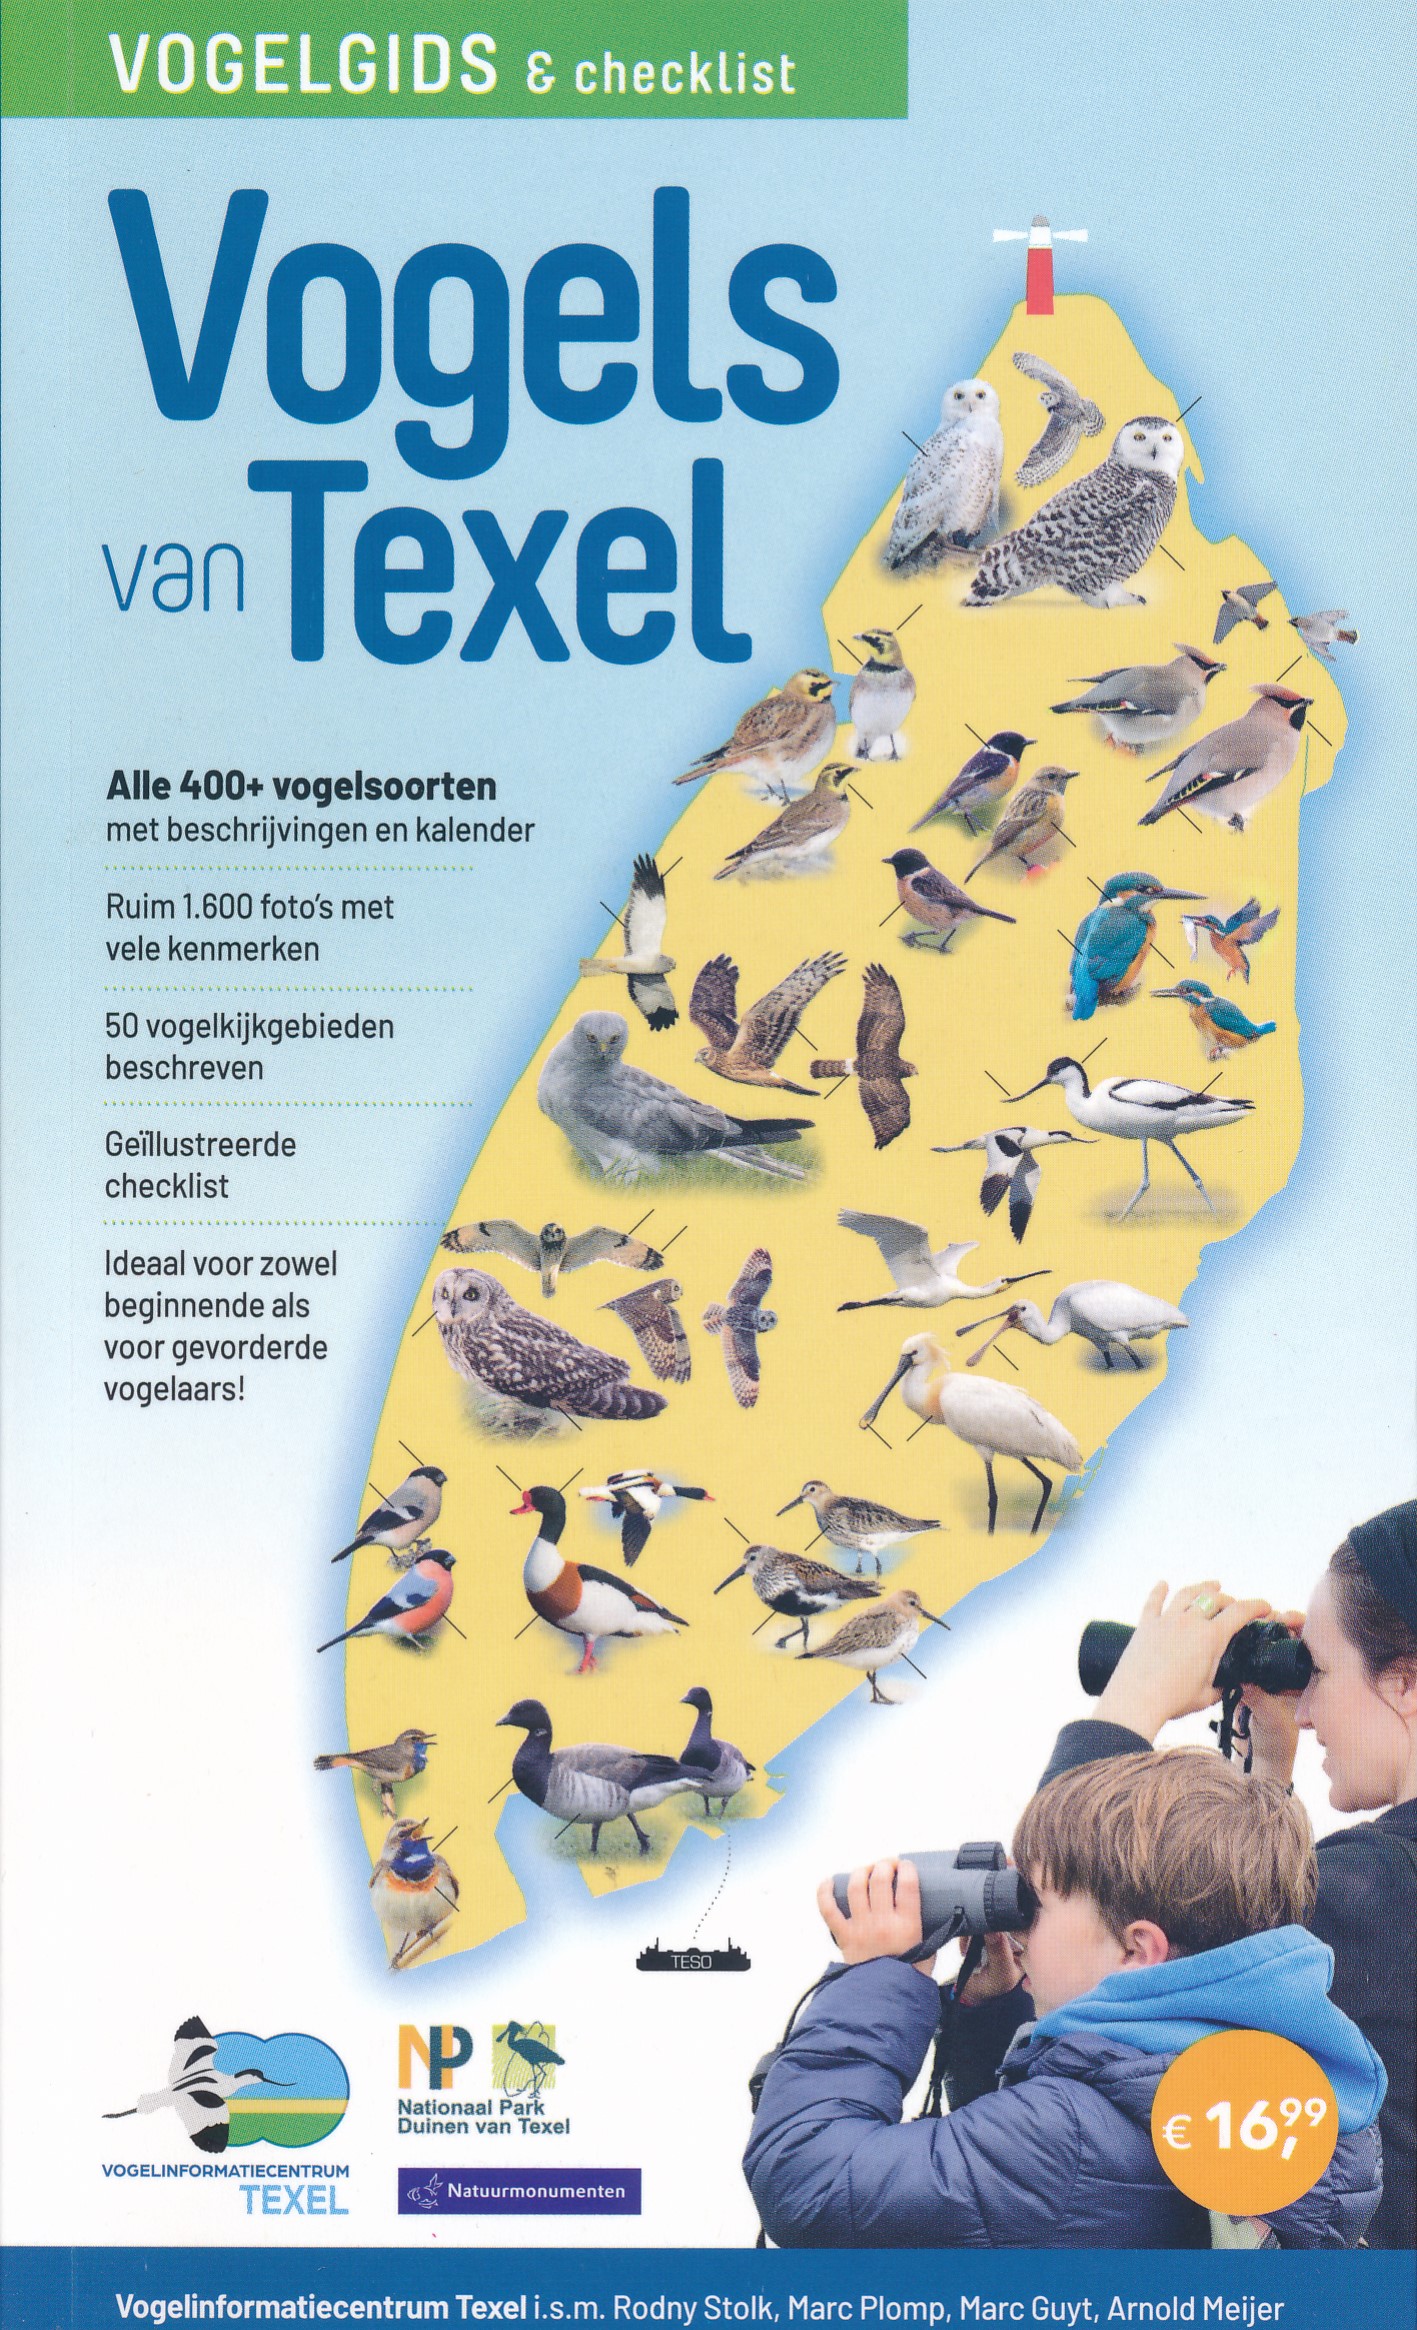 Online bestellen: Vogelgids Vogelgids en checklist Vogels van Texel | NatuurDigitaal